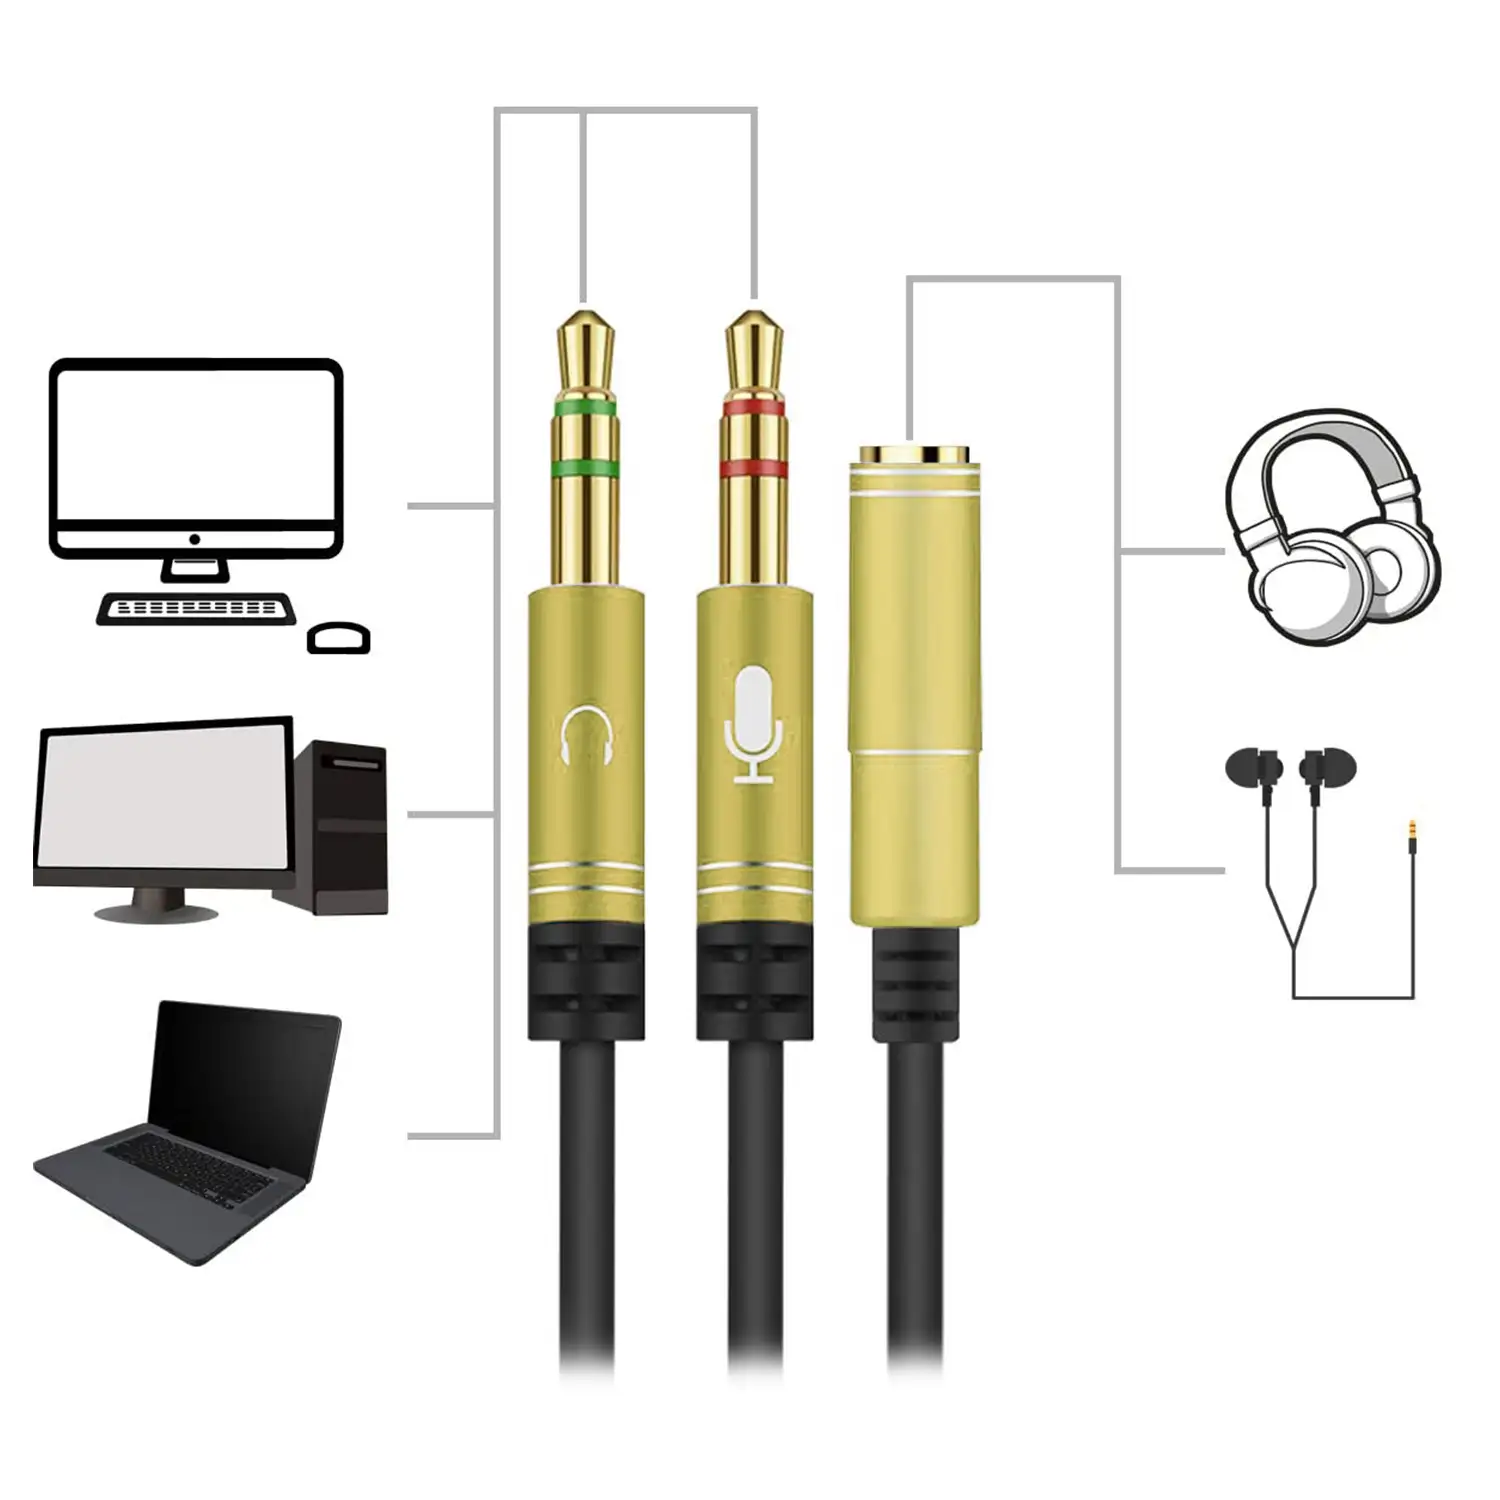 Splitter conversor de minijack (hembra) a doble minijack macho (micrófono y altavoz). Utiliza auriculares con micro incorporado y minijack simple en tu PC.